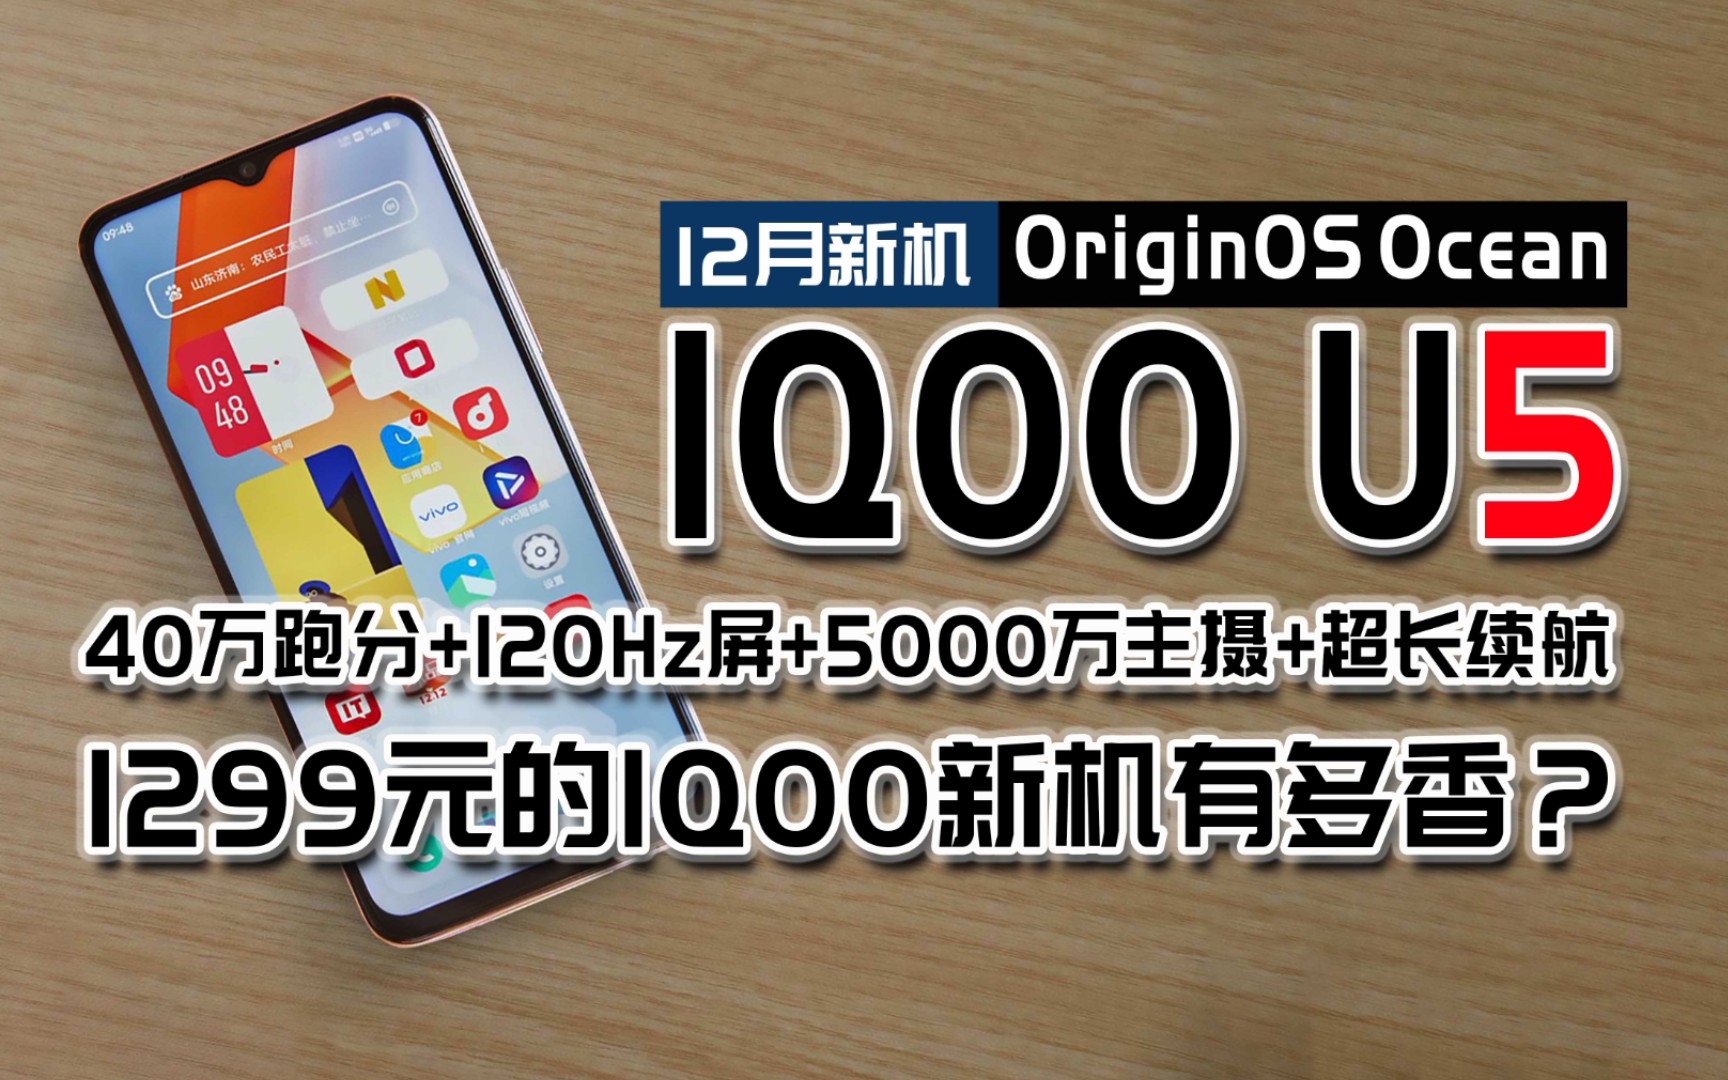 1299元的高性能5G拍照手机IQOOU5来了，首款搭载originos Ocean的5G千元机